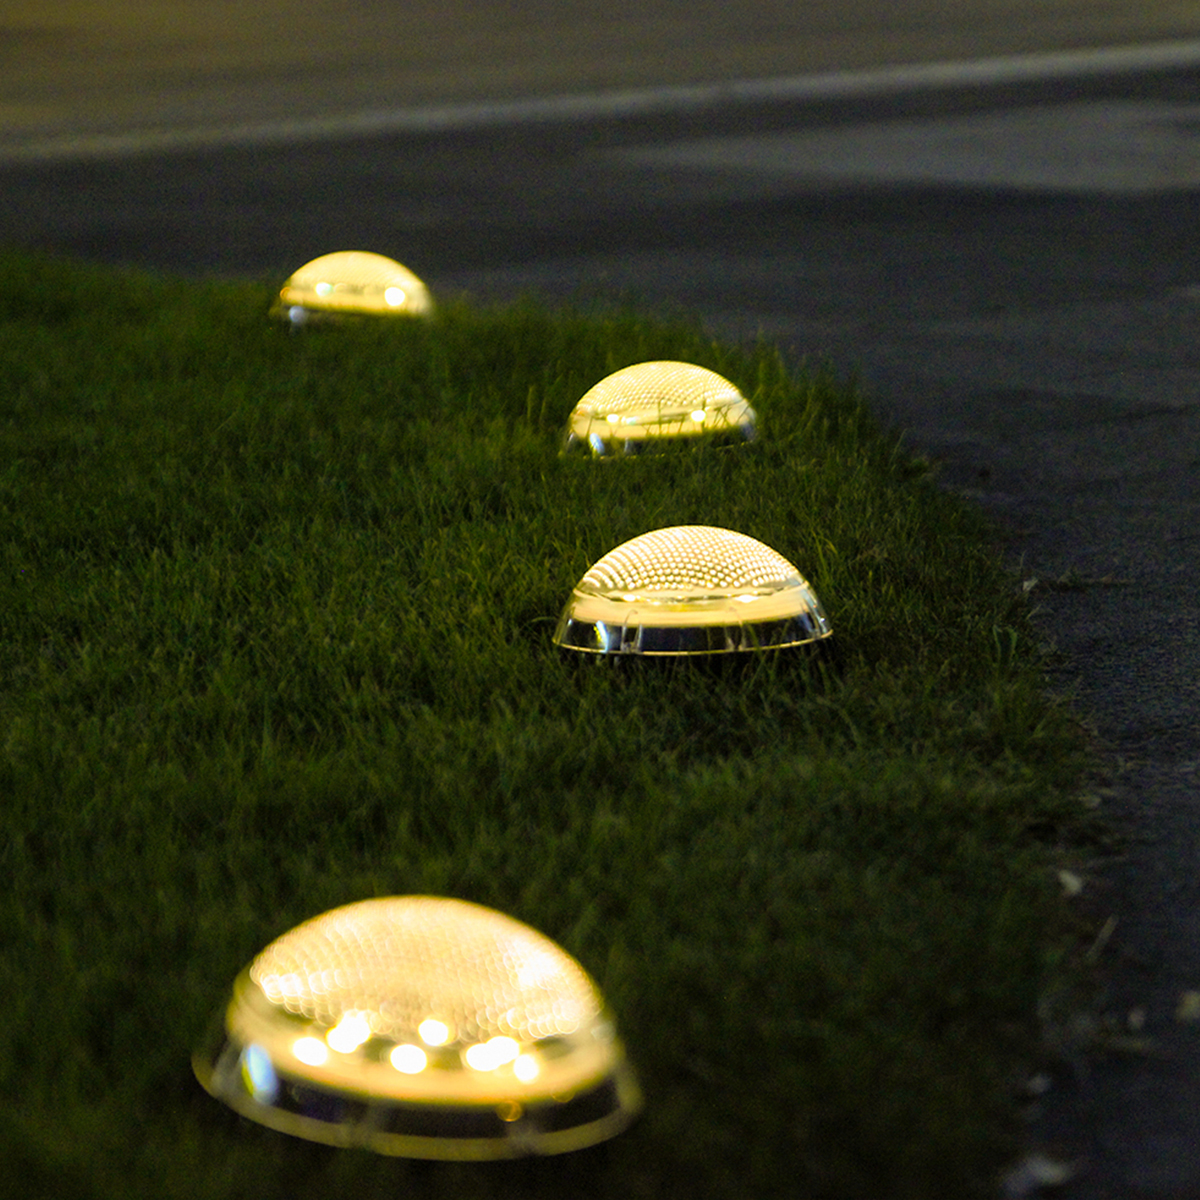 2PCS-Auto-Sensing-LED-Solar-Ball-Light-Garden-Outdoor-Patio-Lawn-Path-Lamp-For-Home-Decor-1770112-7